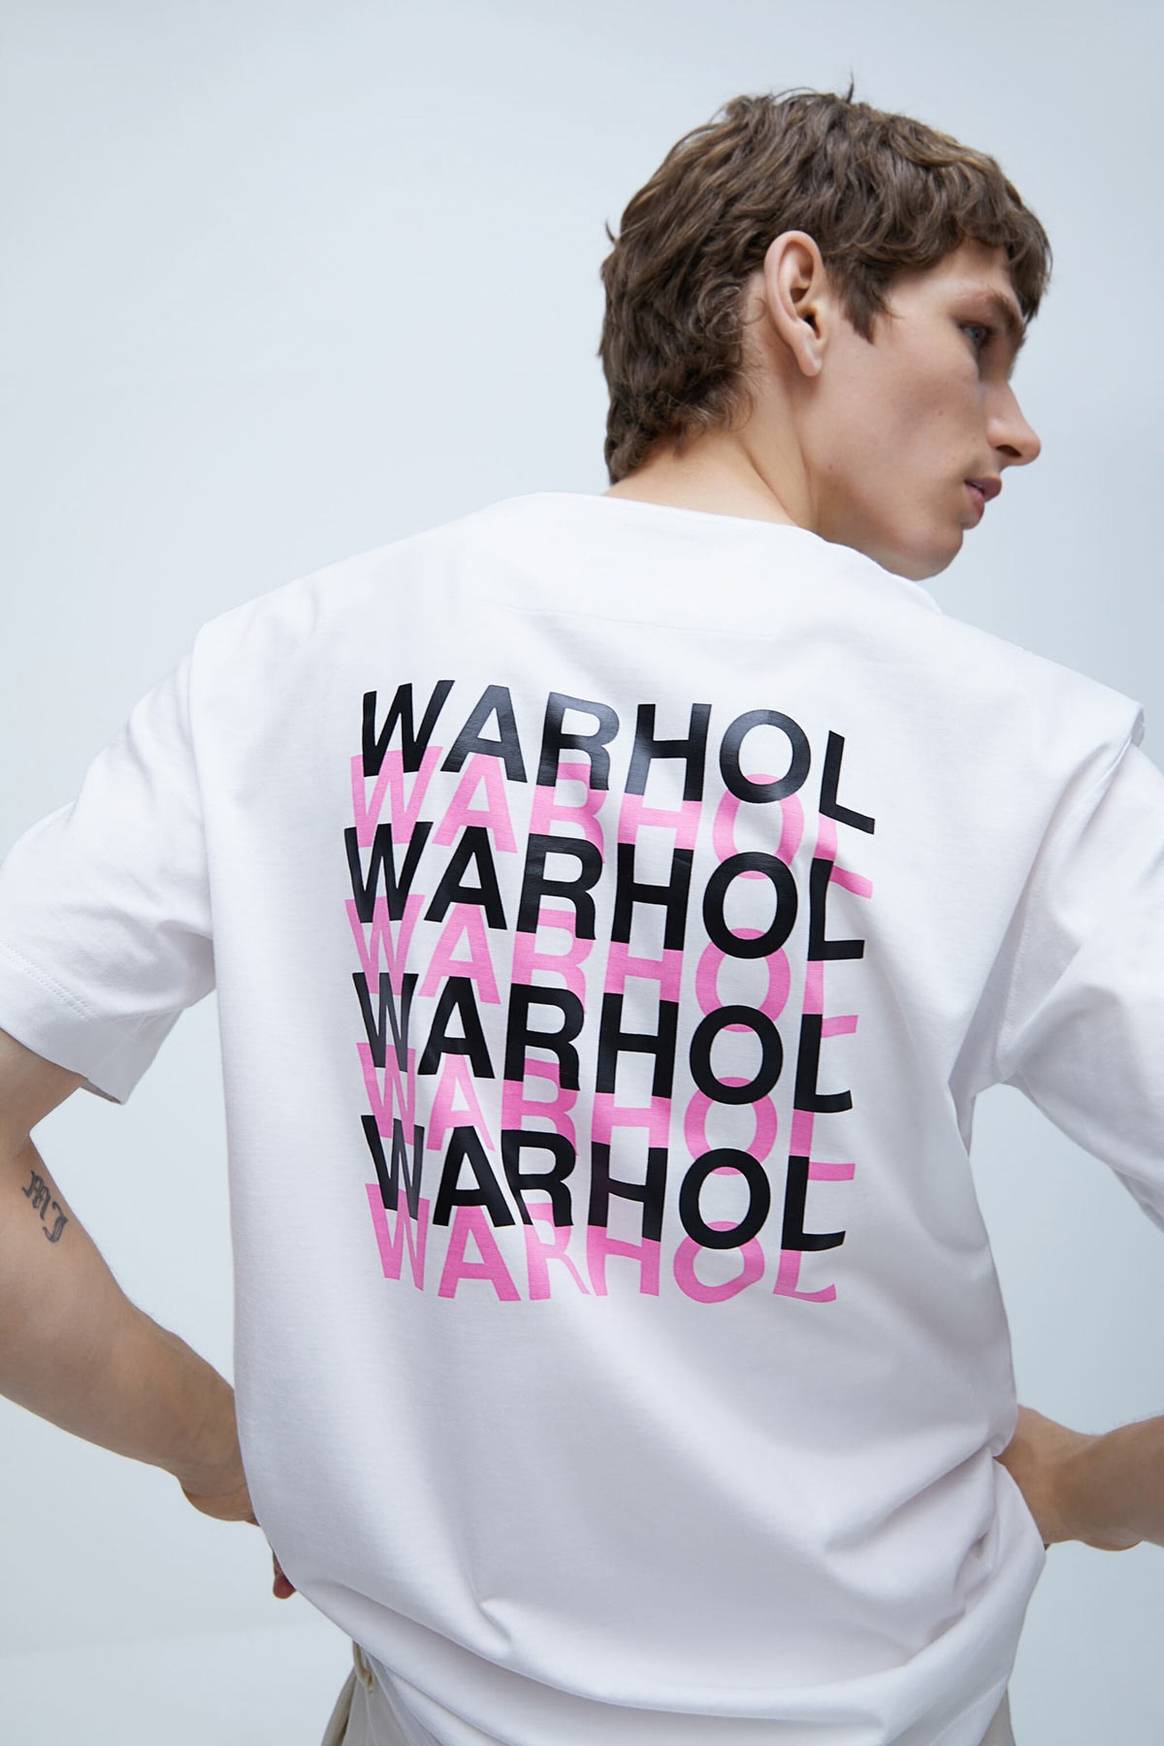 Zara celebra el legado artístico de Andy Warhol con una colección cápsula